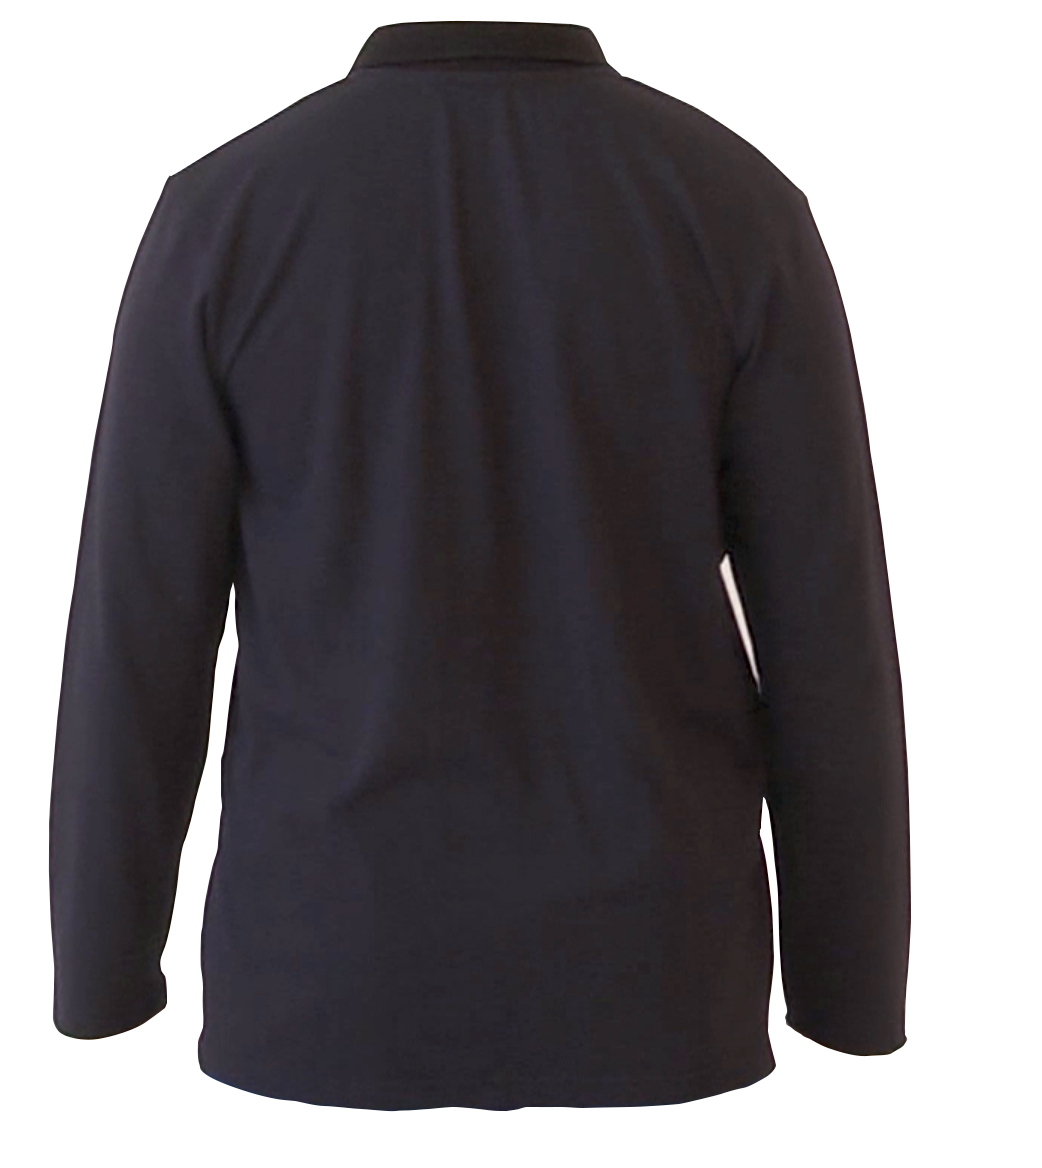 ESD Polo-Shirt Back AQGZ Style Black Unisex M Antistatic Clothing ESD Garment - 473.AQGZ-APS21-BKM